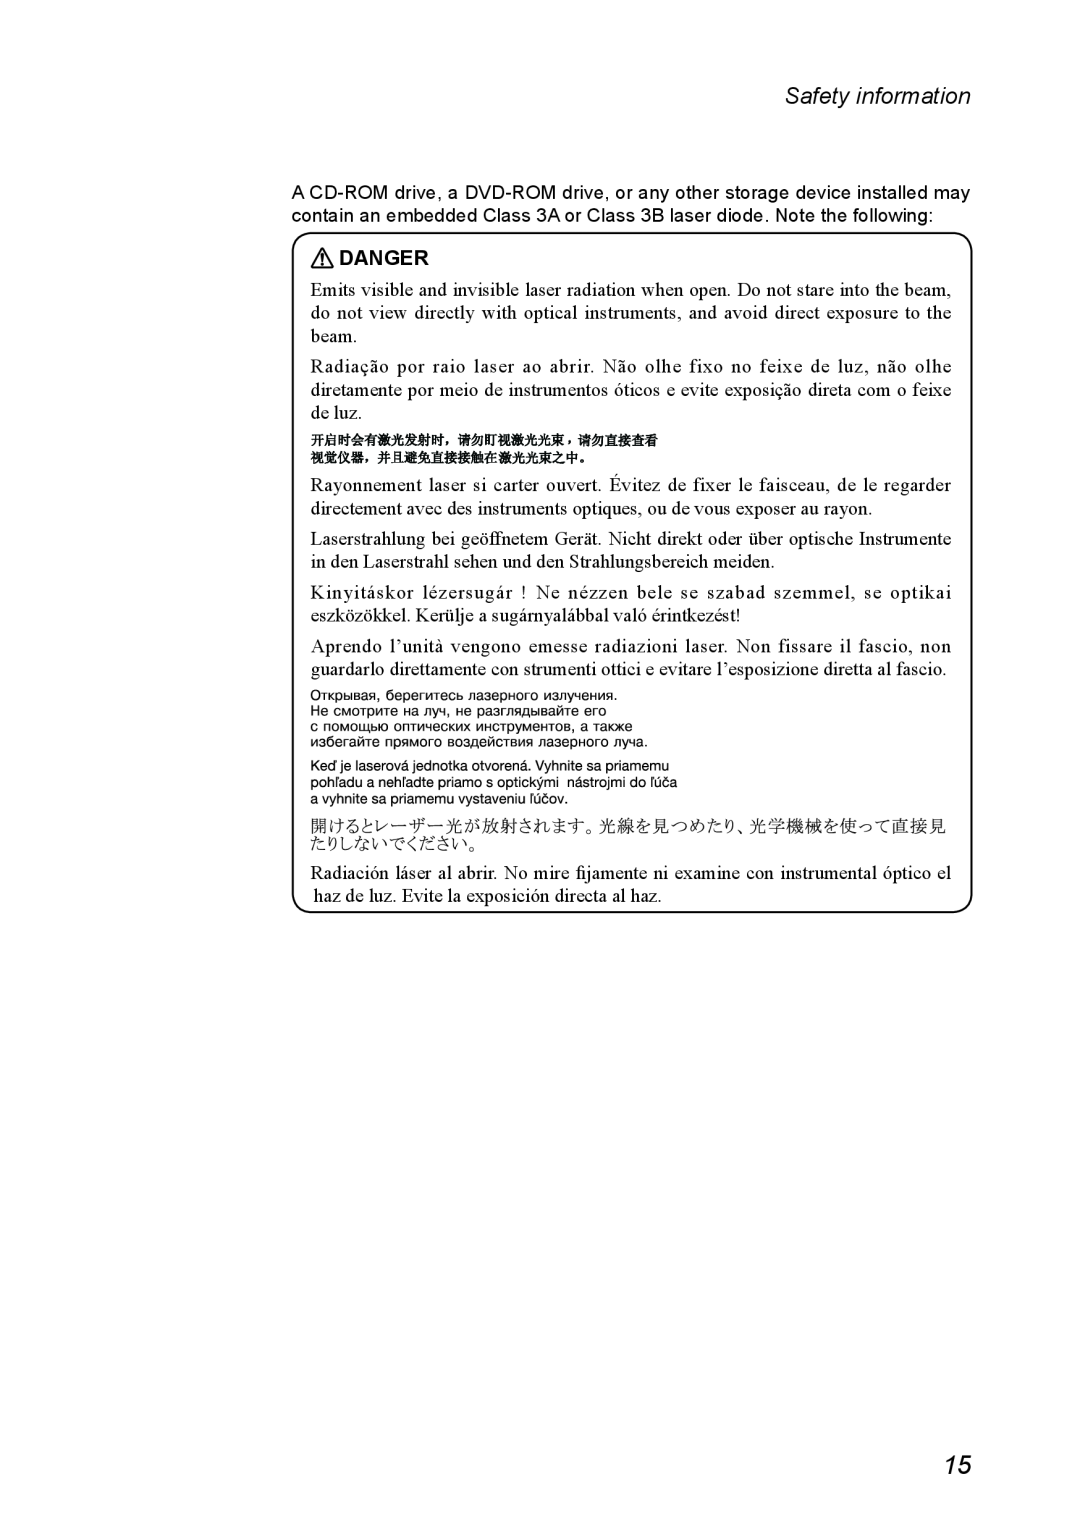 Lenovo 11 manual Danger, Safety information 